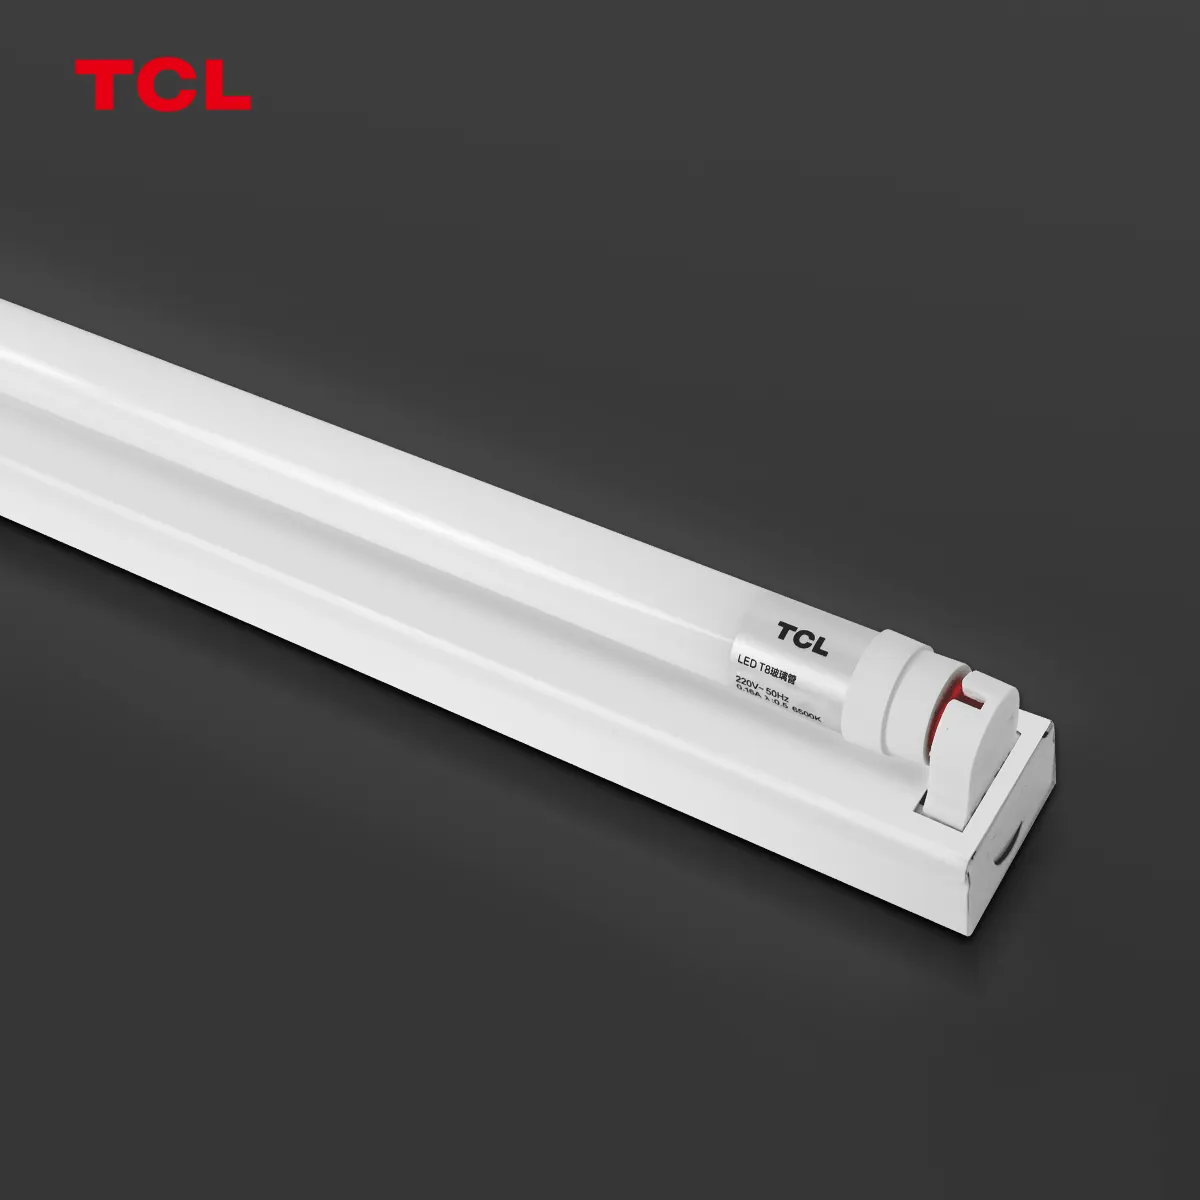 TCL 6500k 20W led t8 tüp lamba 20w saydam tüp ışık led tüp ışık tube8 led ışık lamba